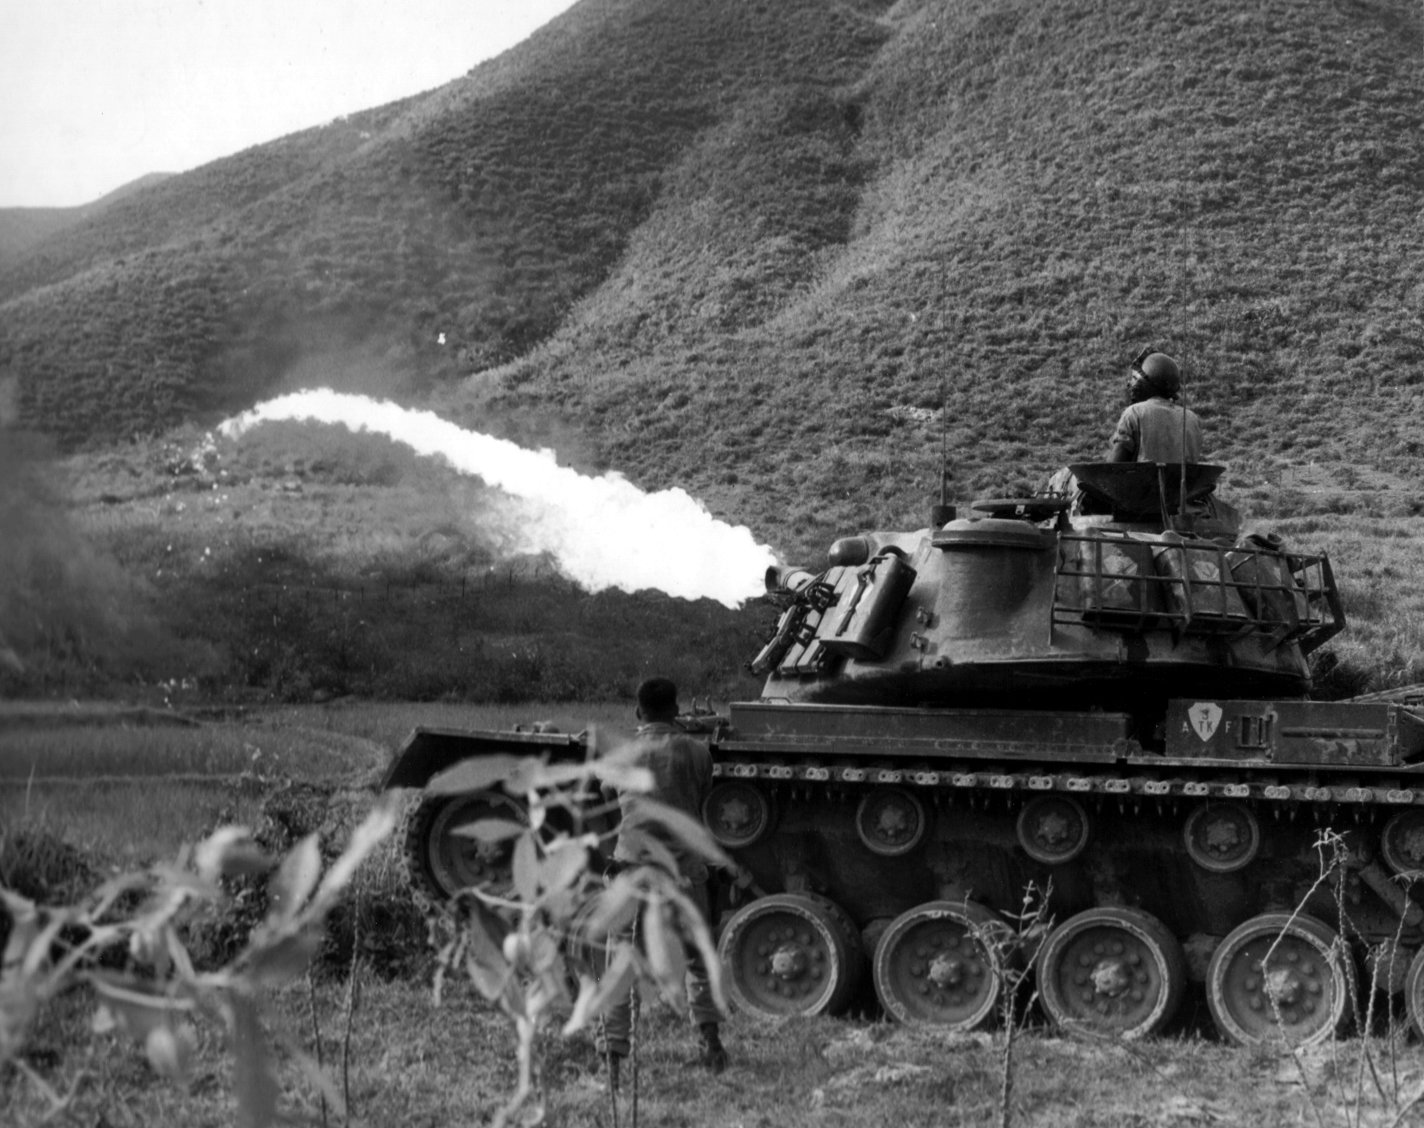 flamethrower tanks marines Vietnam coffee or die